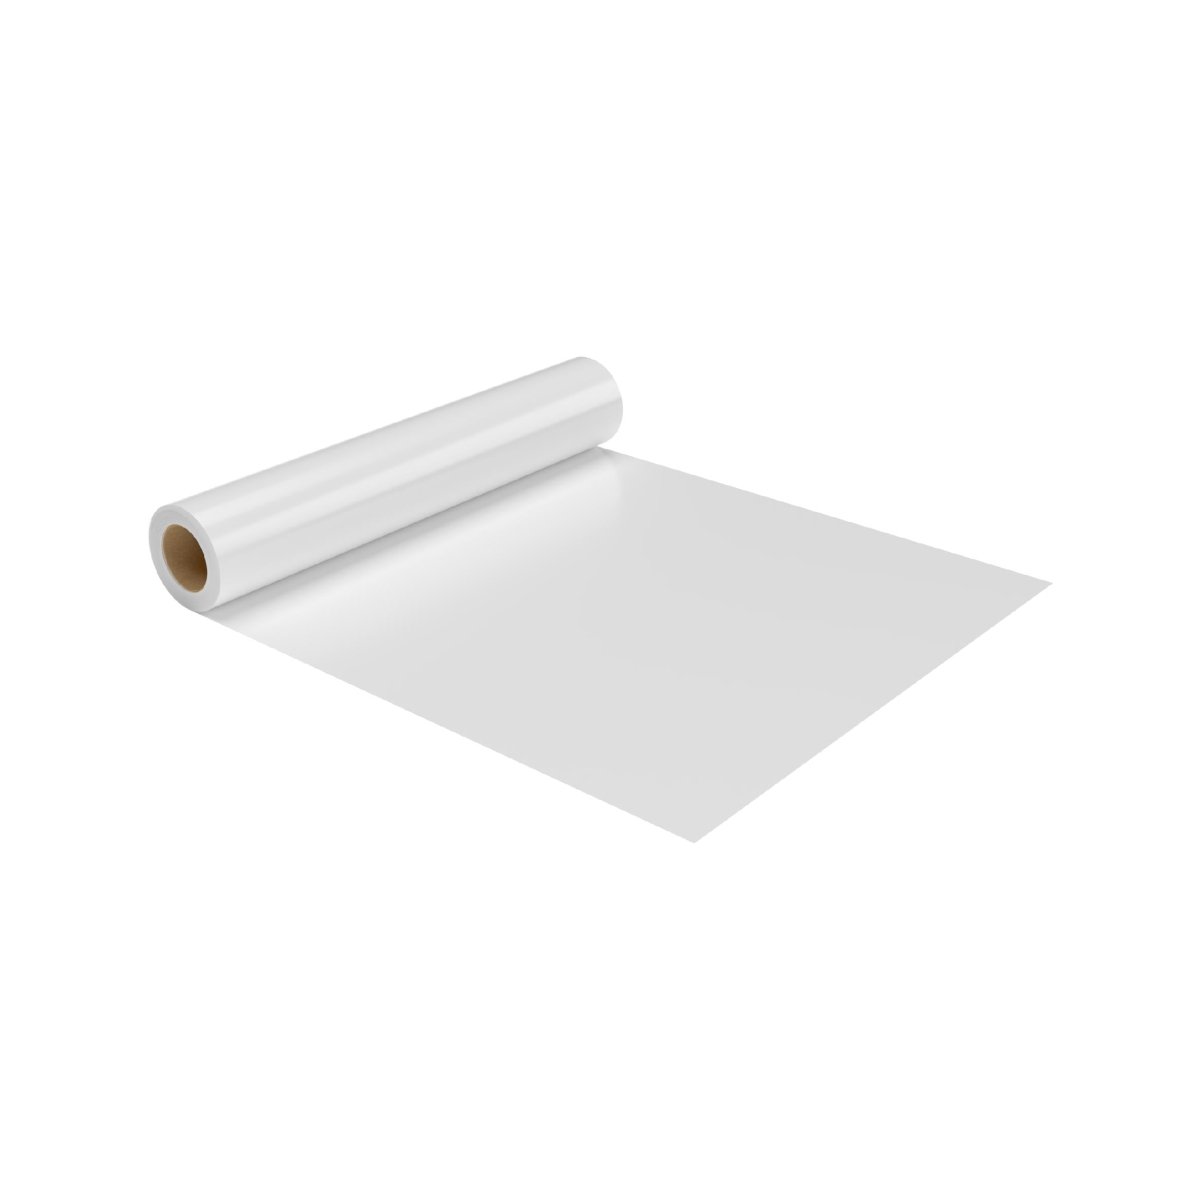 White Sofra Table Sheet - hotpackwebstore.com - Sofra Table Sheet Rolls